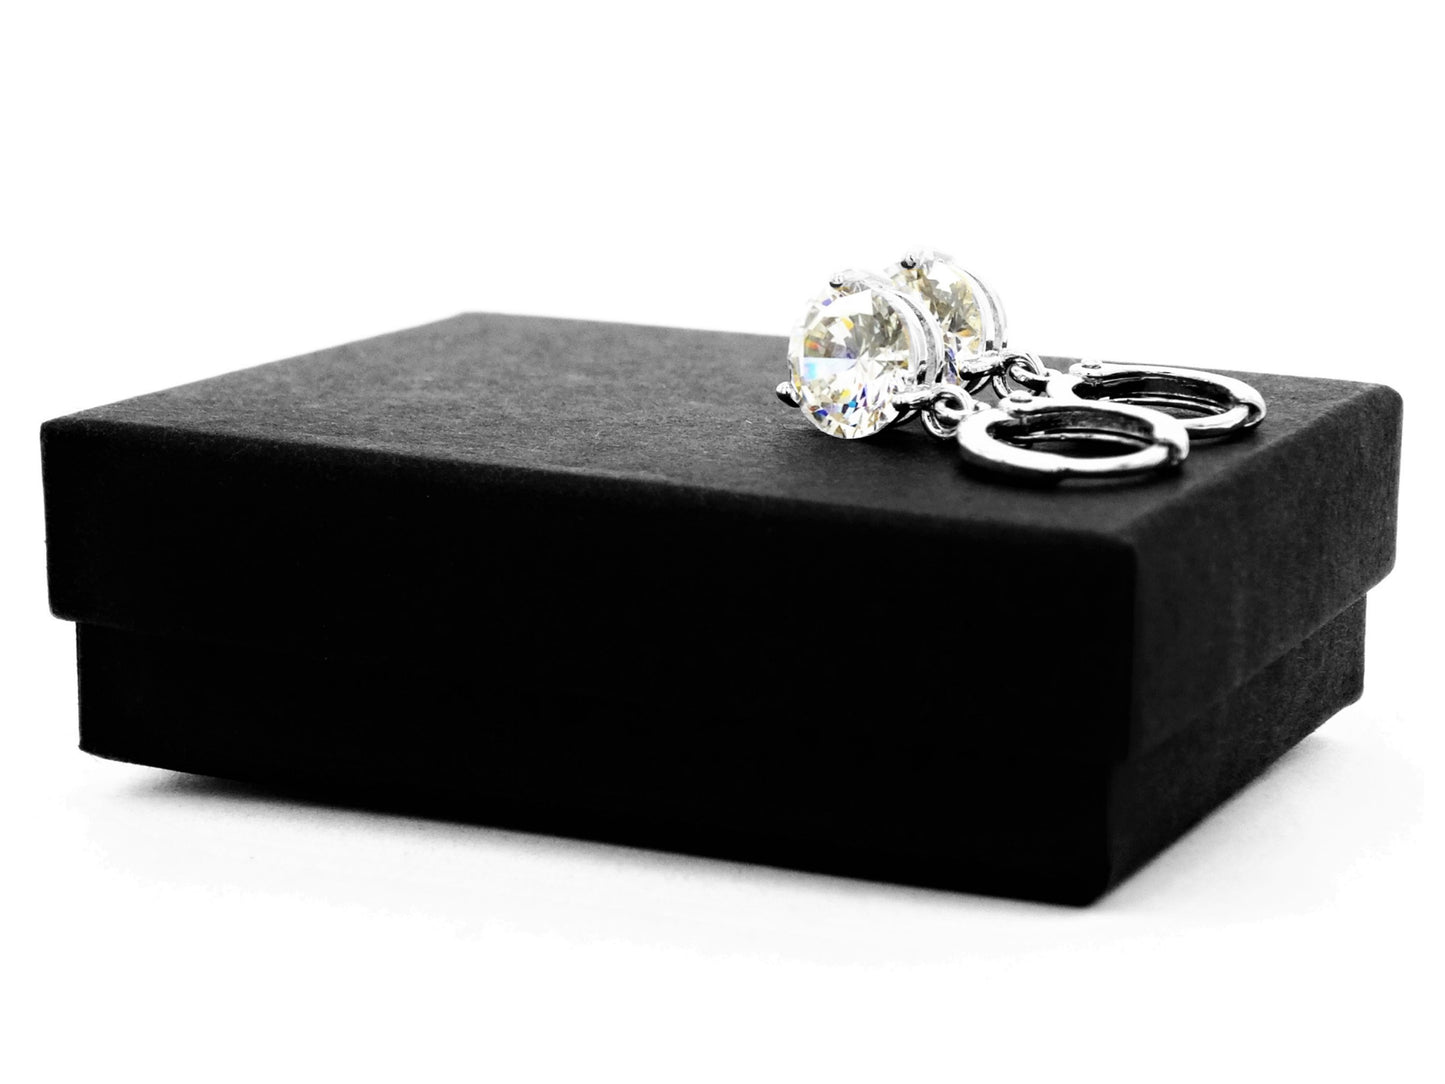 White gem white gold earrings GIFT BOX